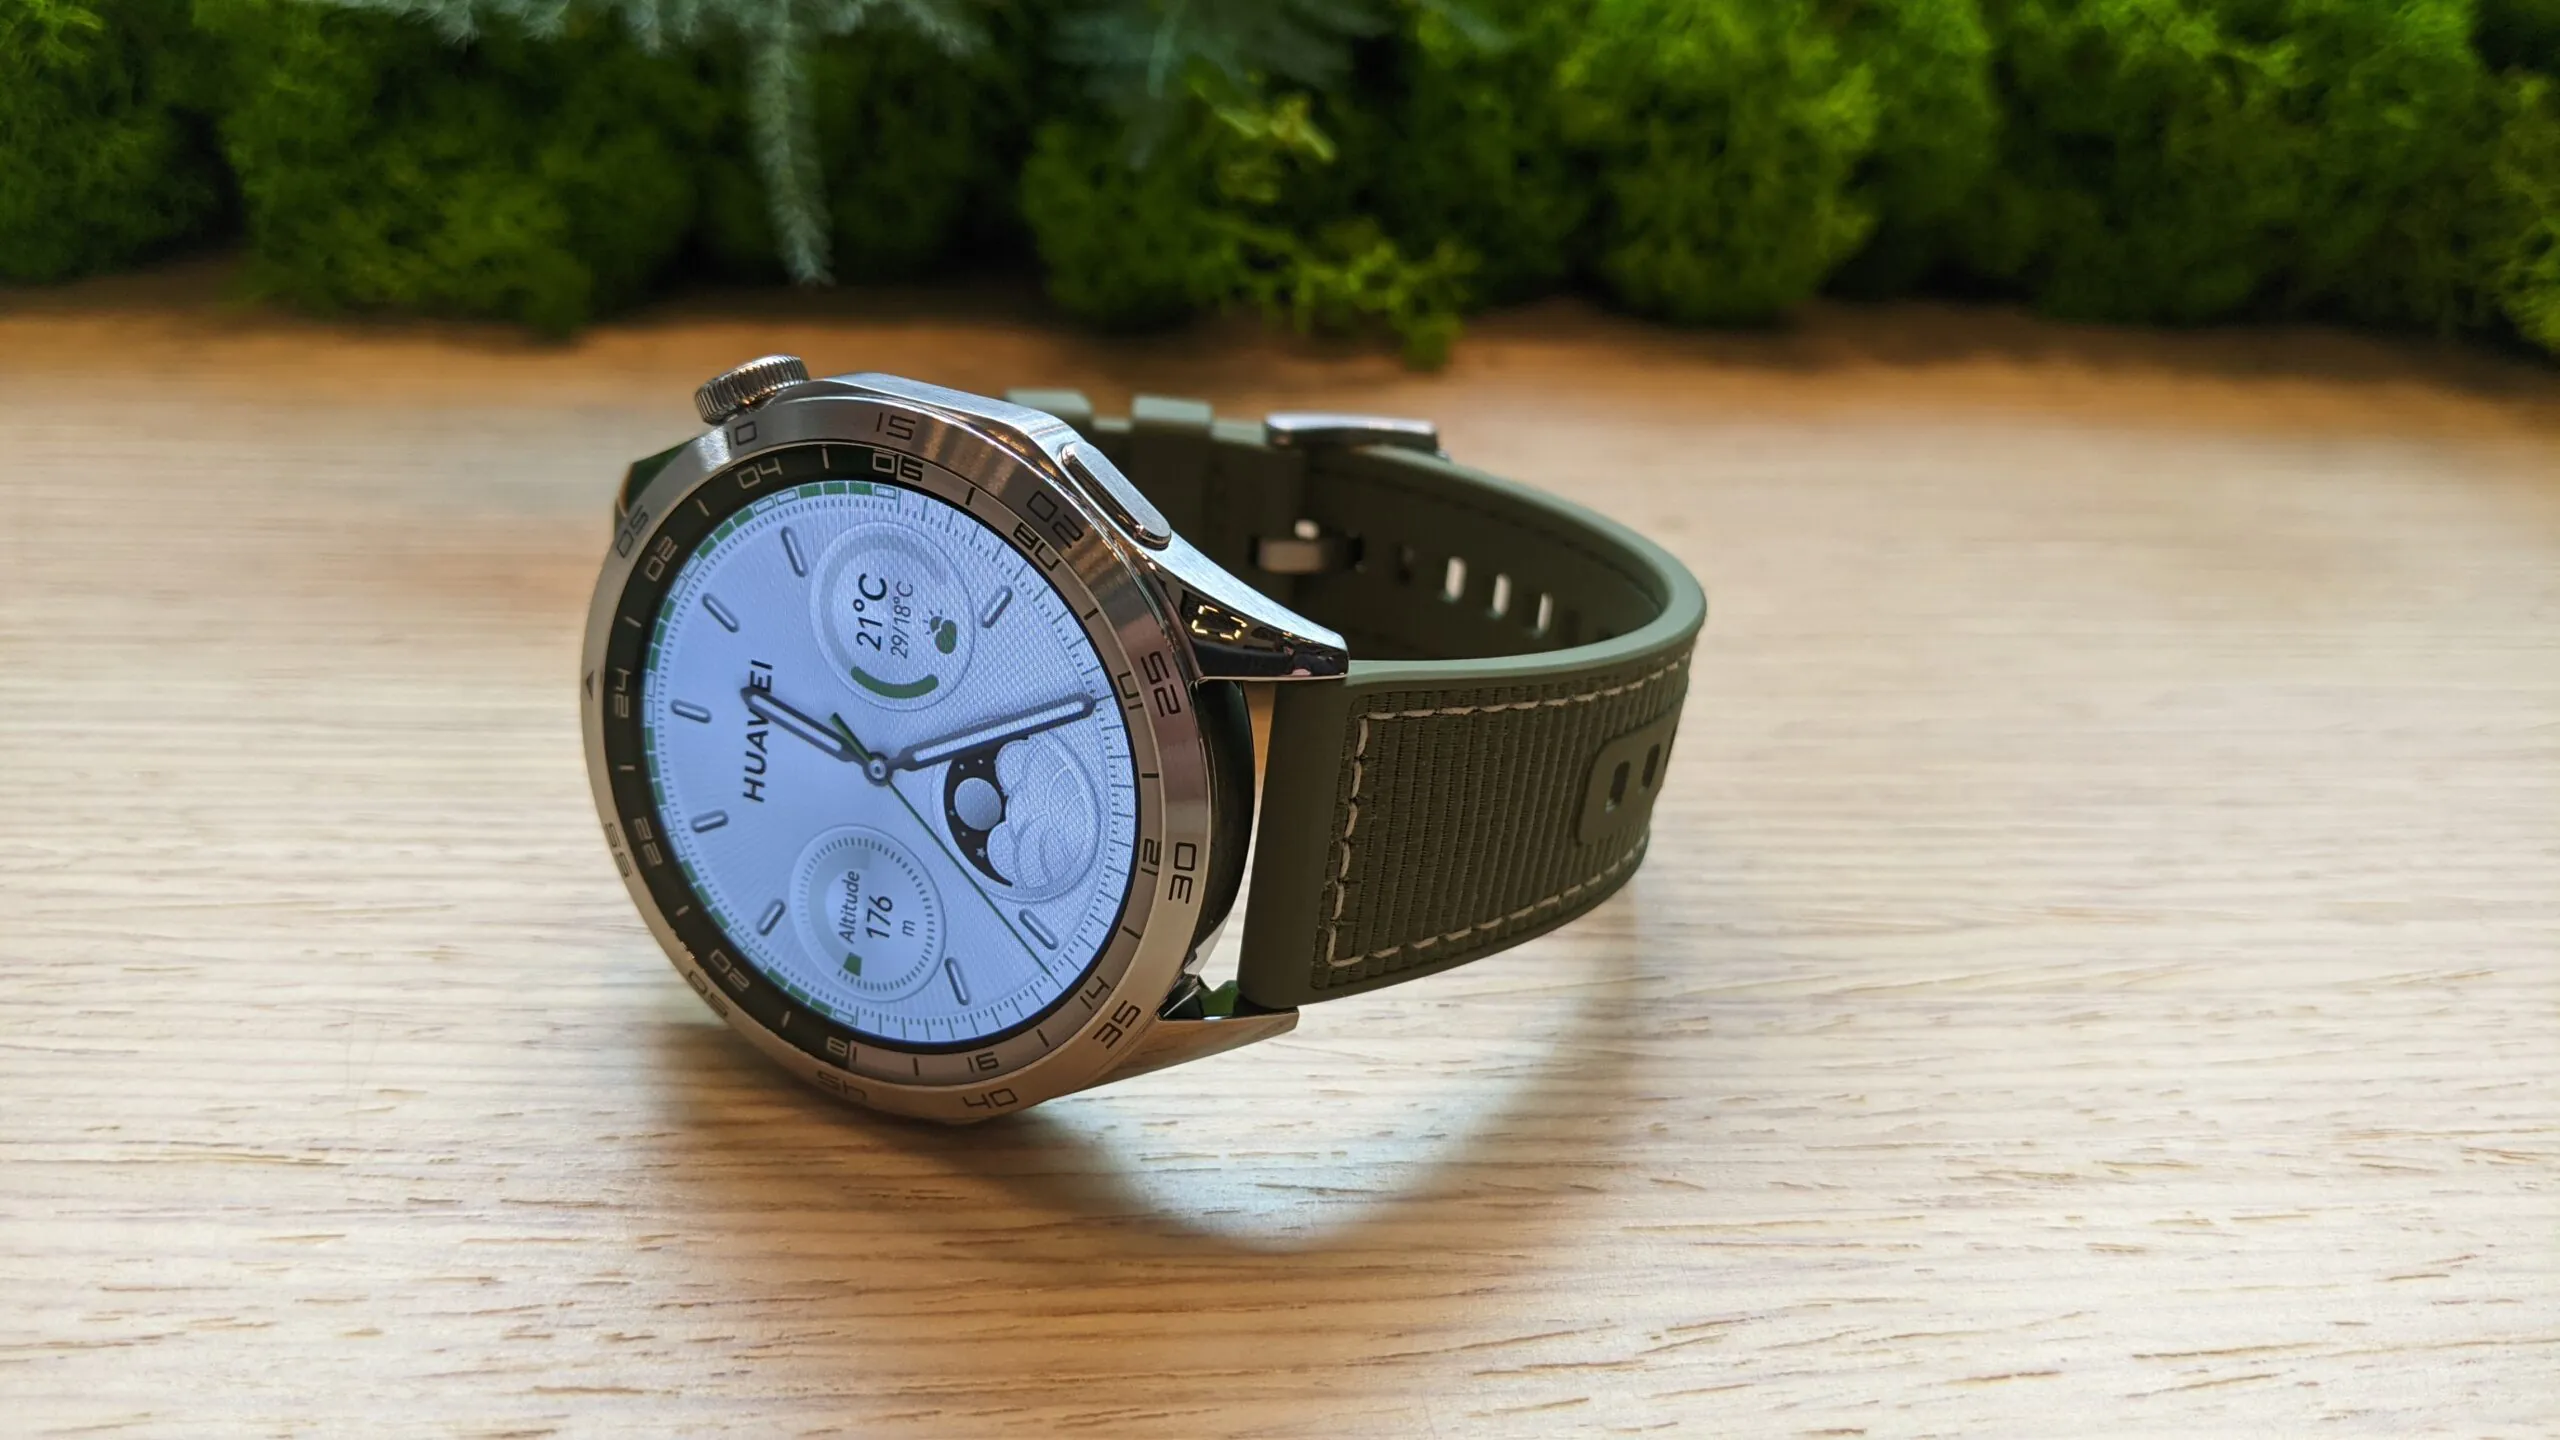 Probamos el Huawei Watch GT4: un reloj con diseño premium y un precio más  bajo de lo que parece